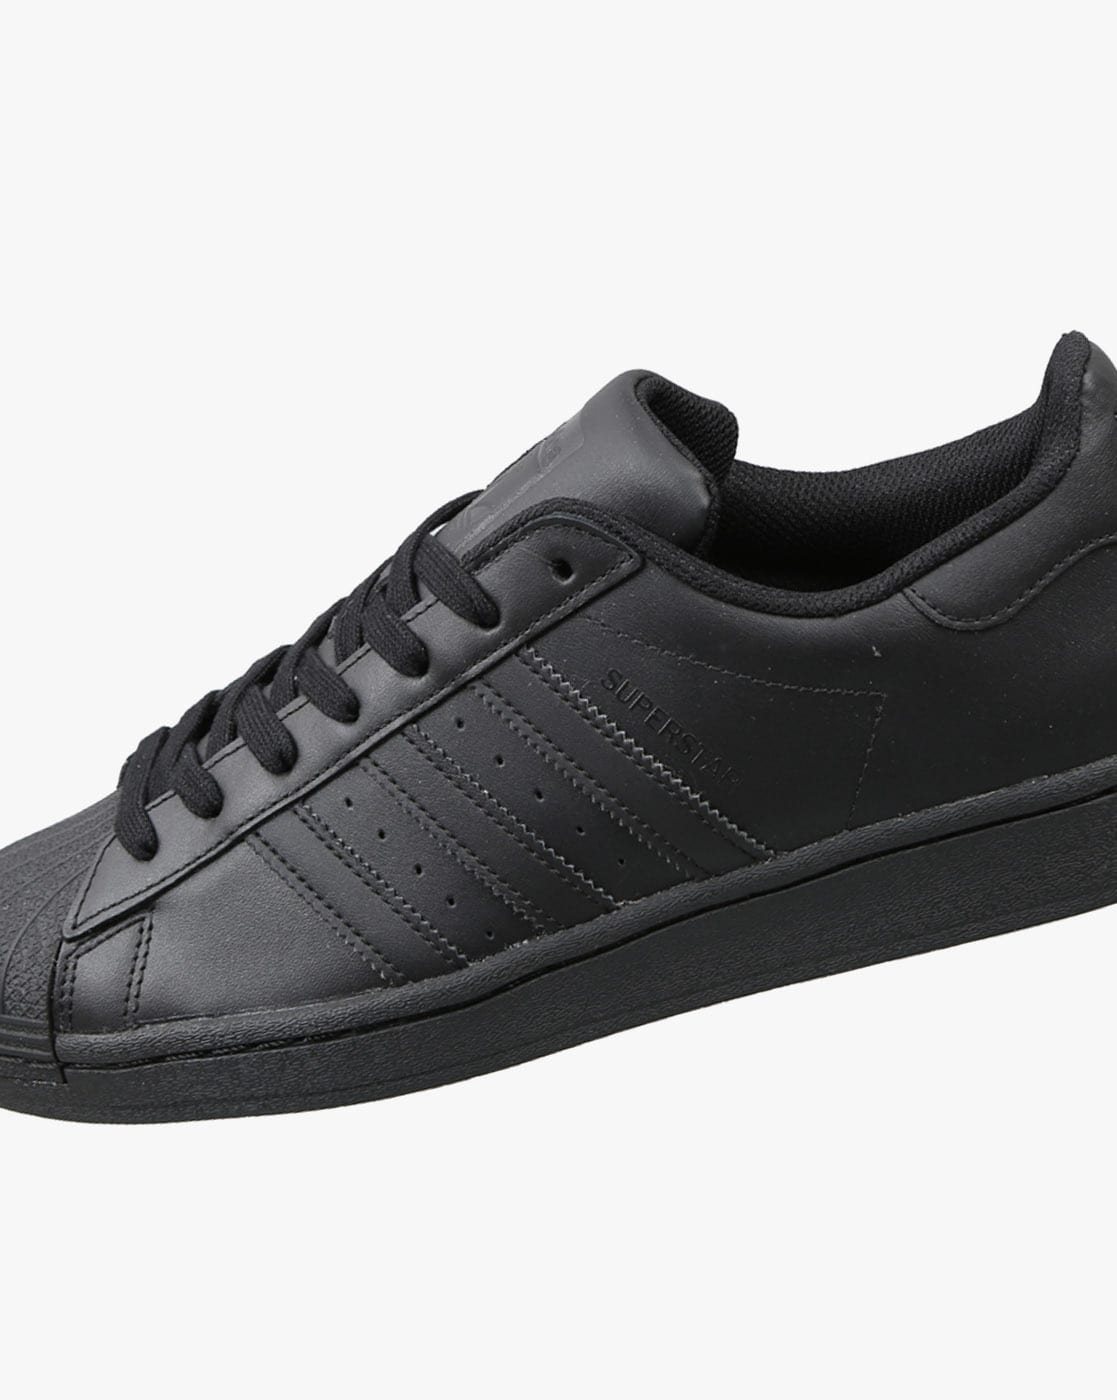 sneakers adidas black